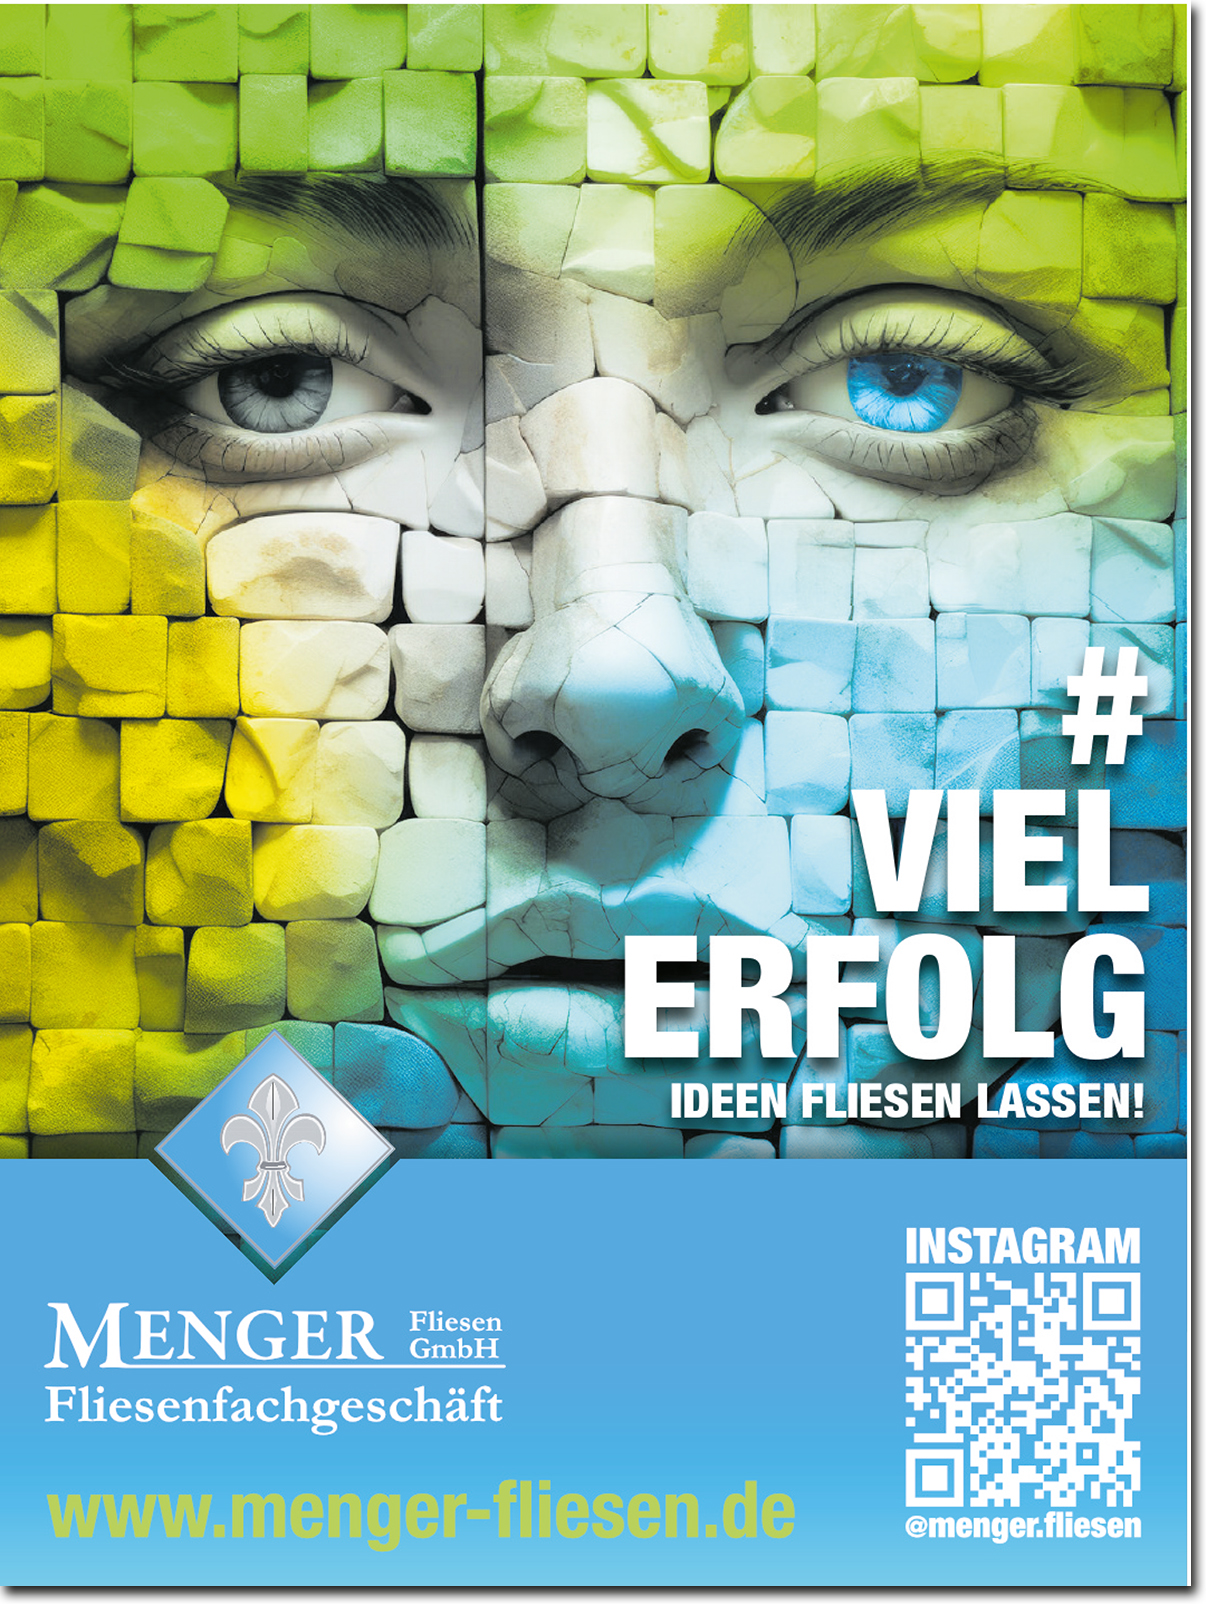 Menger Fliesen GmbH